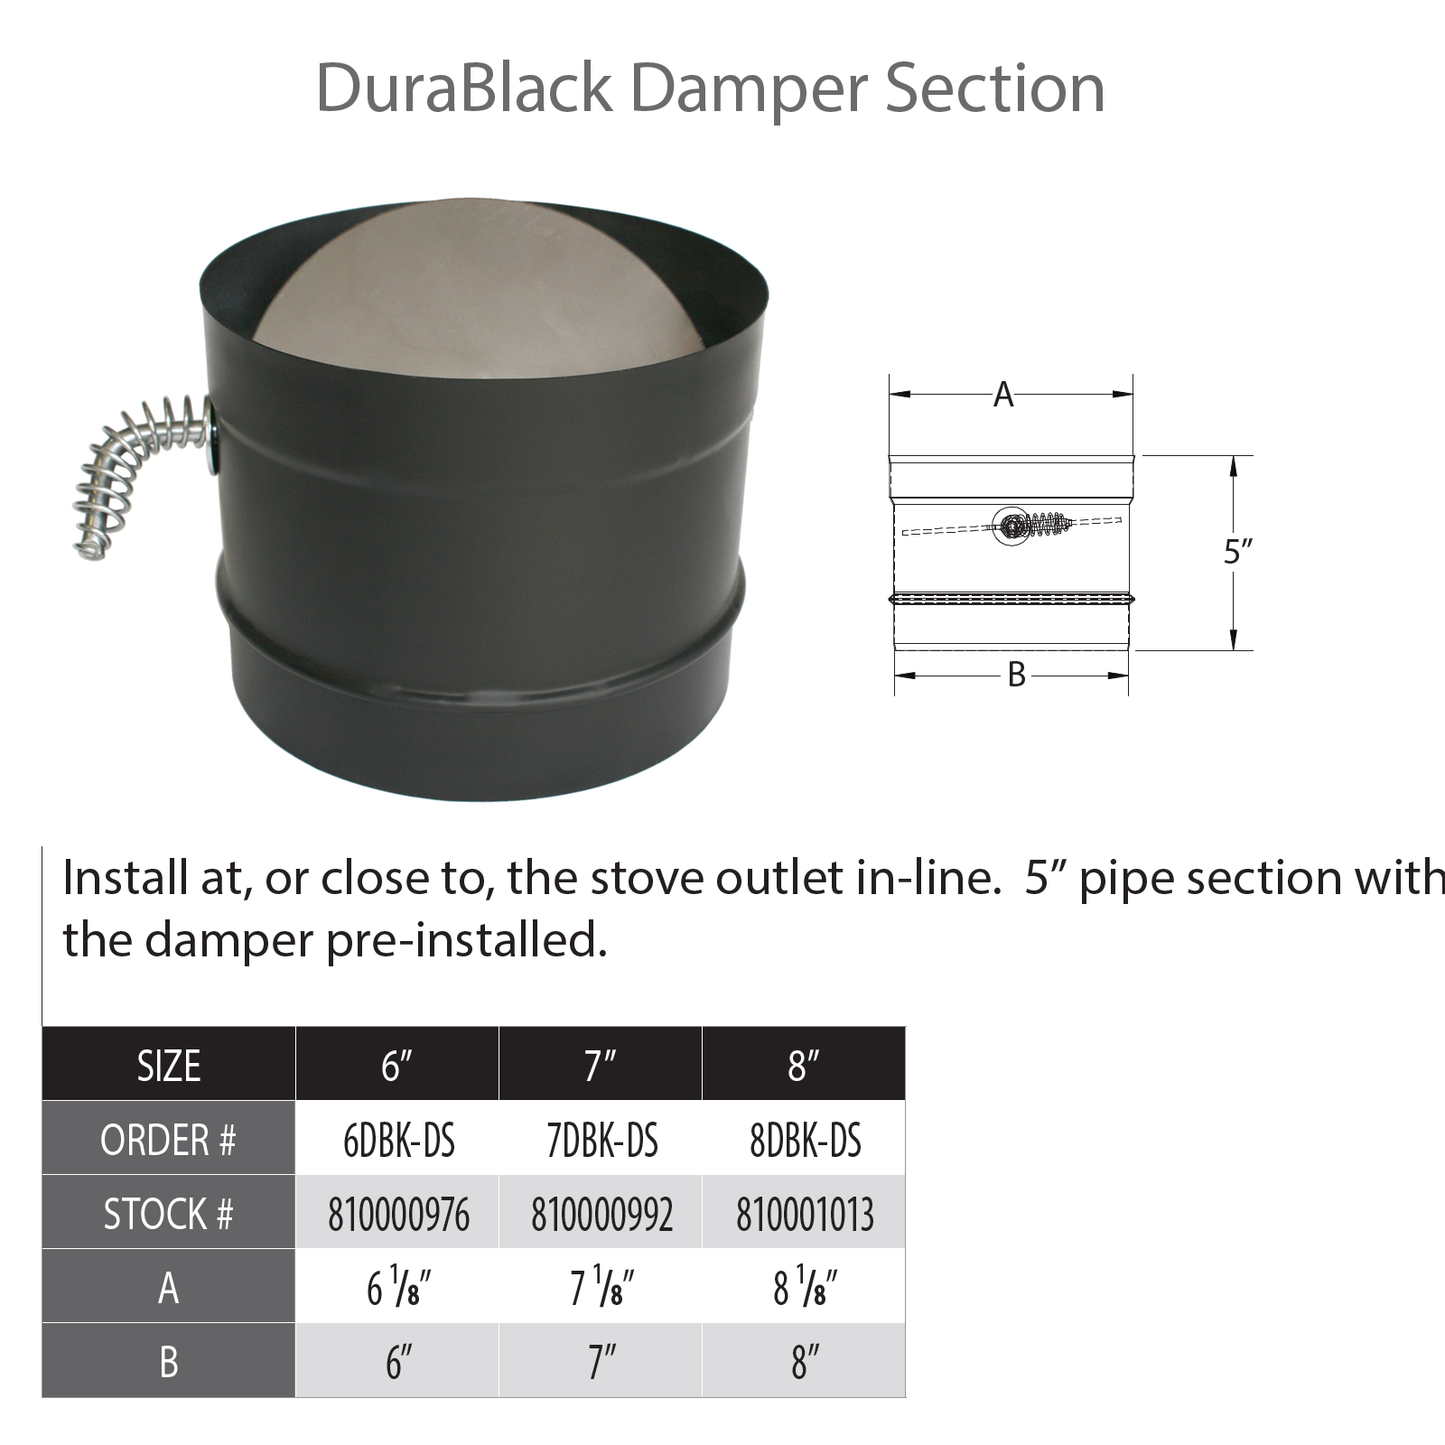 DuraVent DuraBlack 6" Diameter Black Damper Section | 6DBK-DS